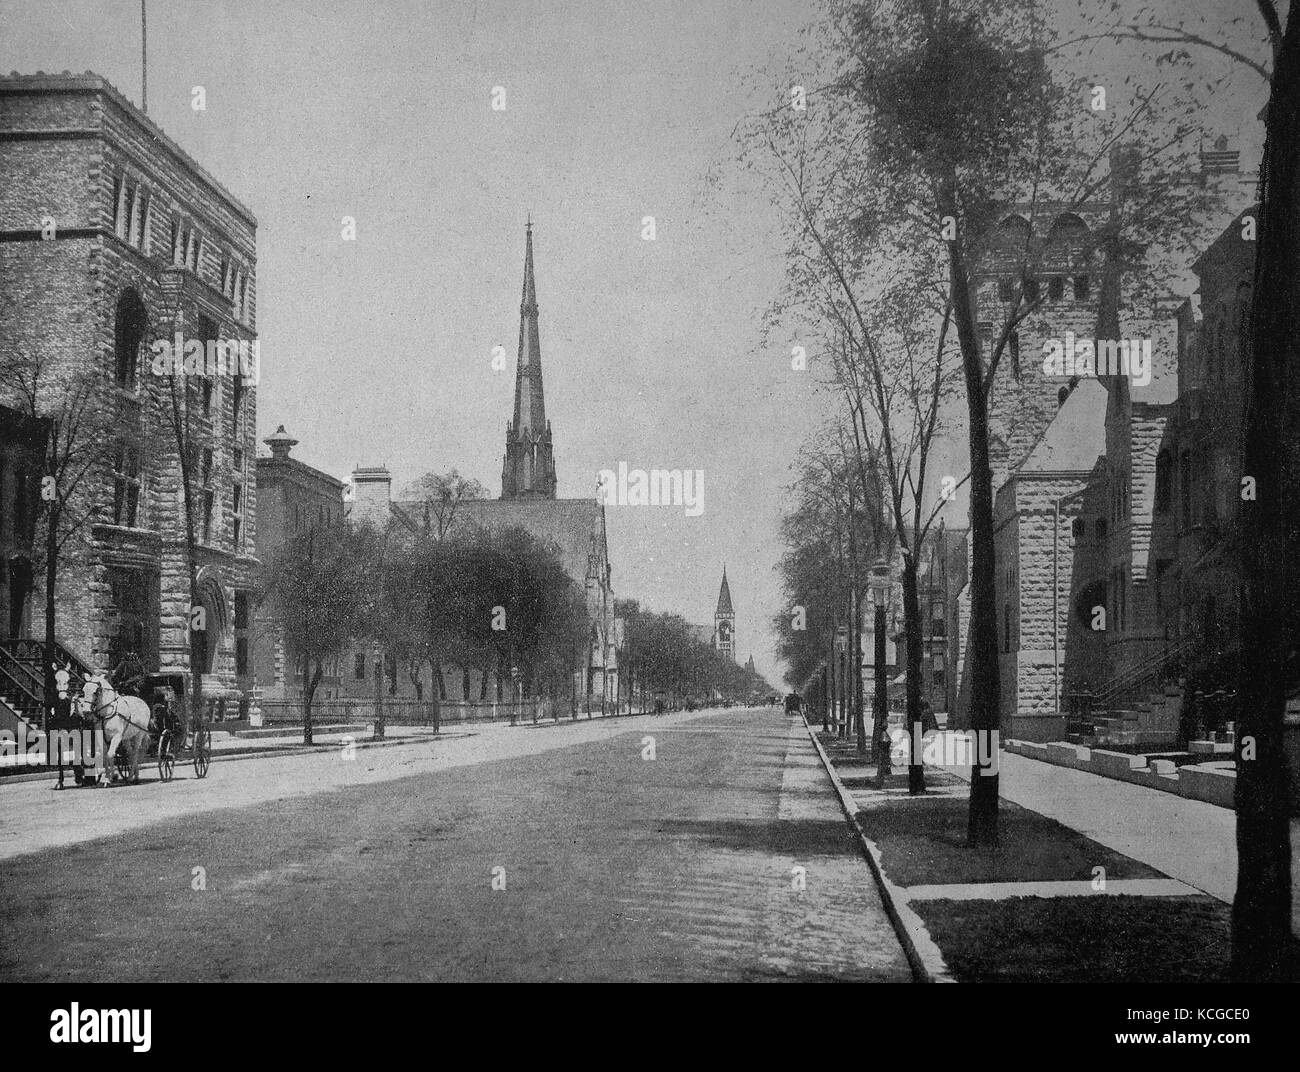 États-unis d'Amérique, l'Avenue Michigan Avenue dans la ville de Chicago, état de l'Illinois, l'amélioration numérique reproduction d'une photo historique de l'année 1899 (estimé) Banque D'Images